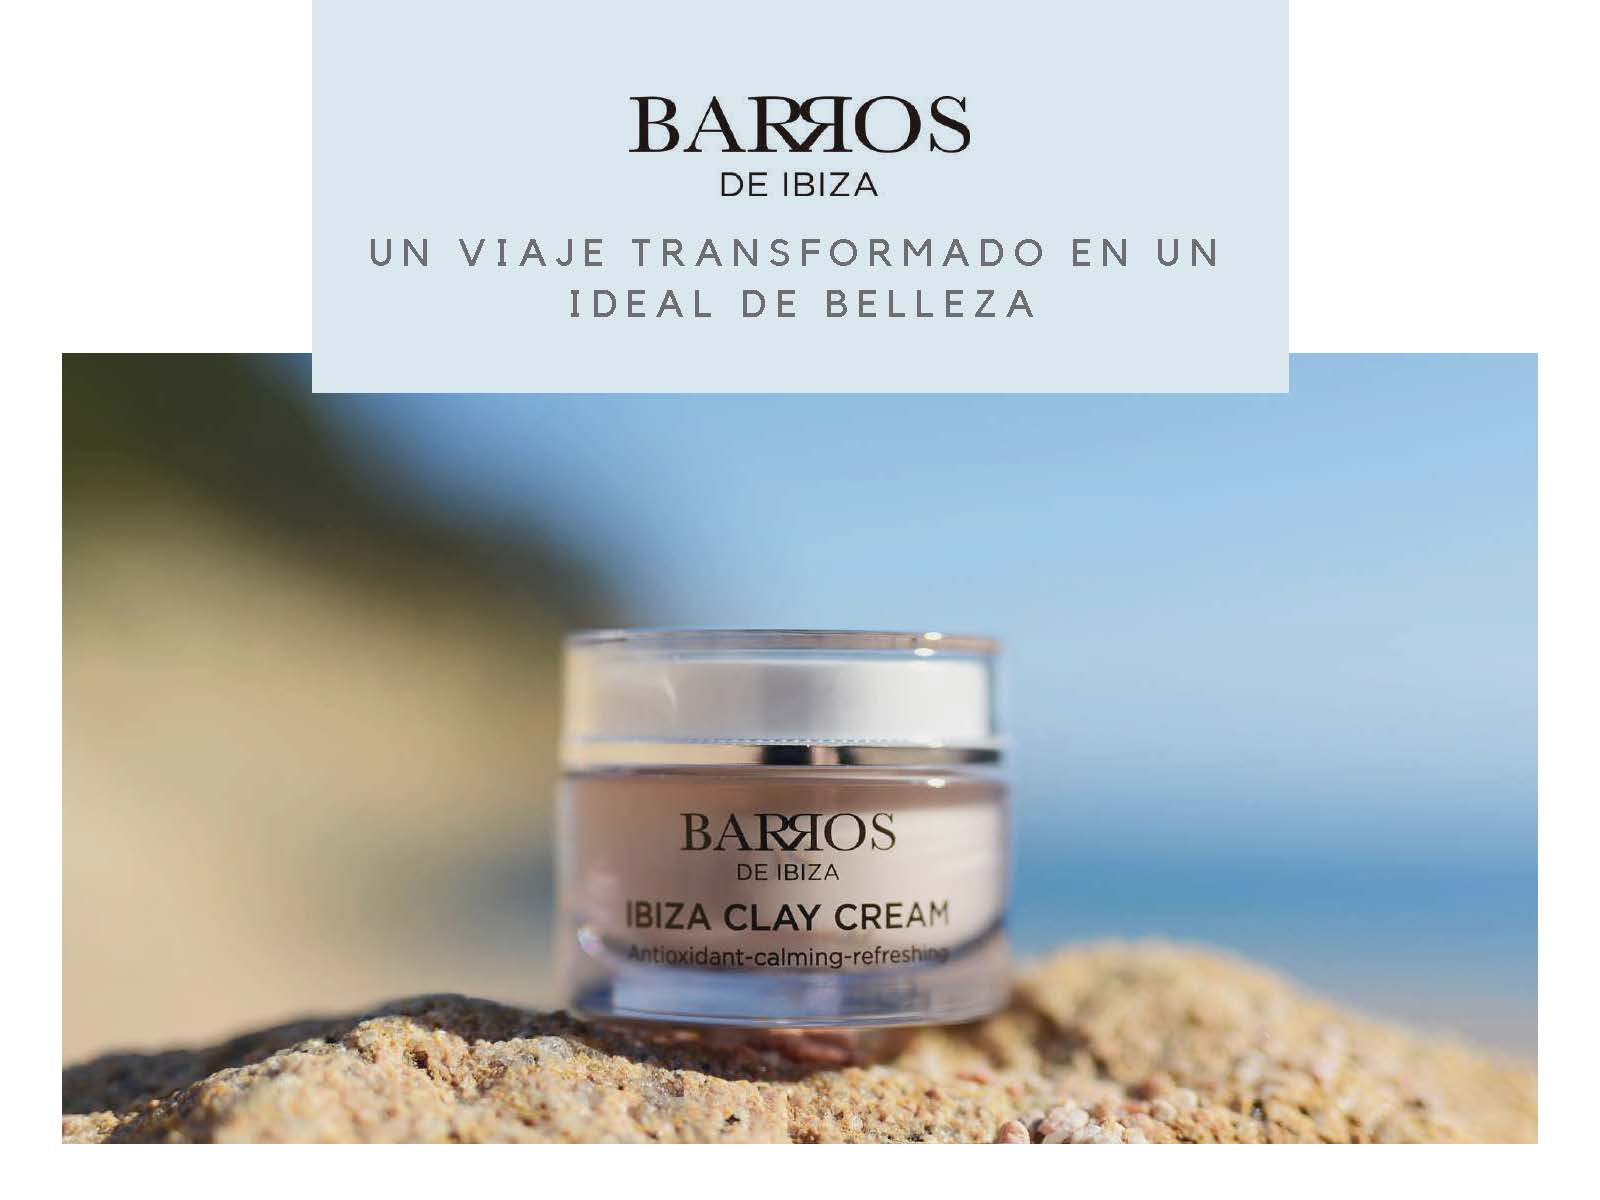 Ibiza Clay Mask | Barros de Ibiza | 50 ml.  ¡AHORA COMPRA 2 Y PAGA UNA! - Natura Estilo